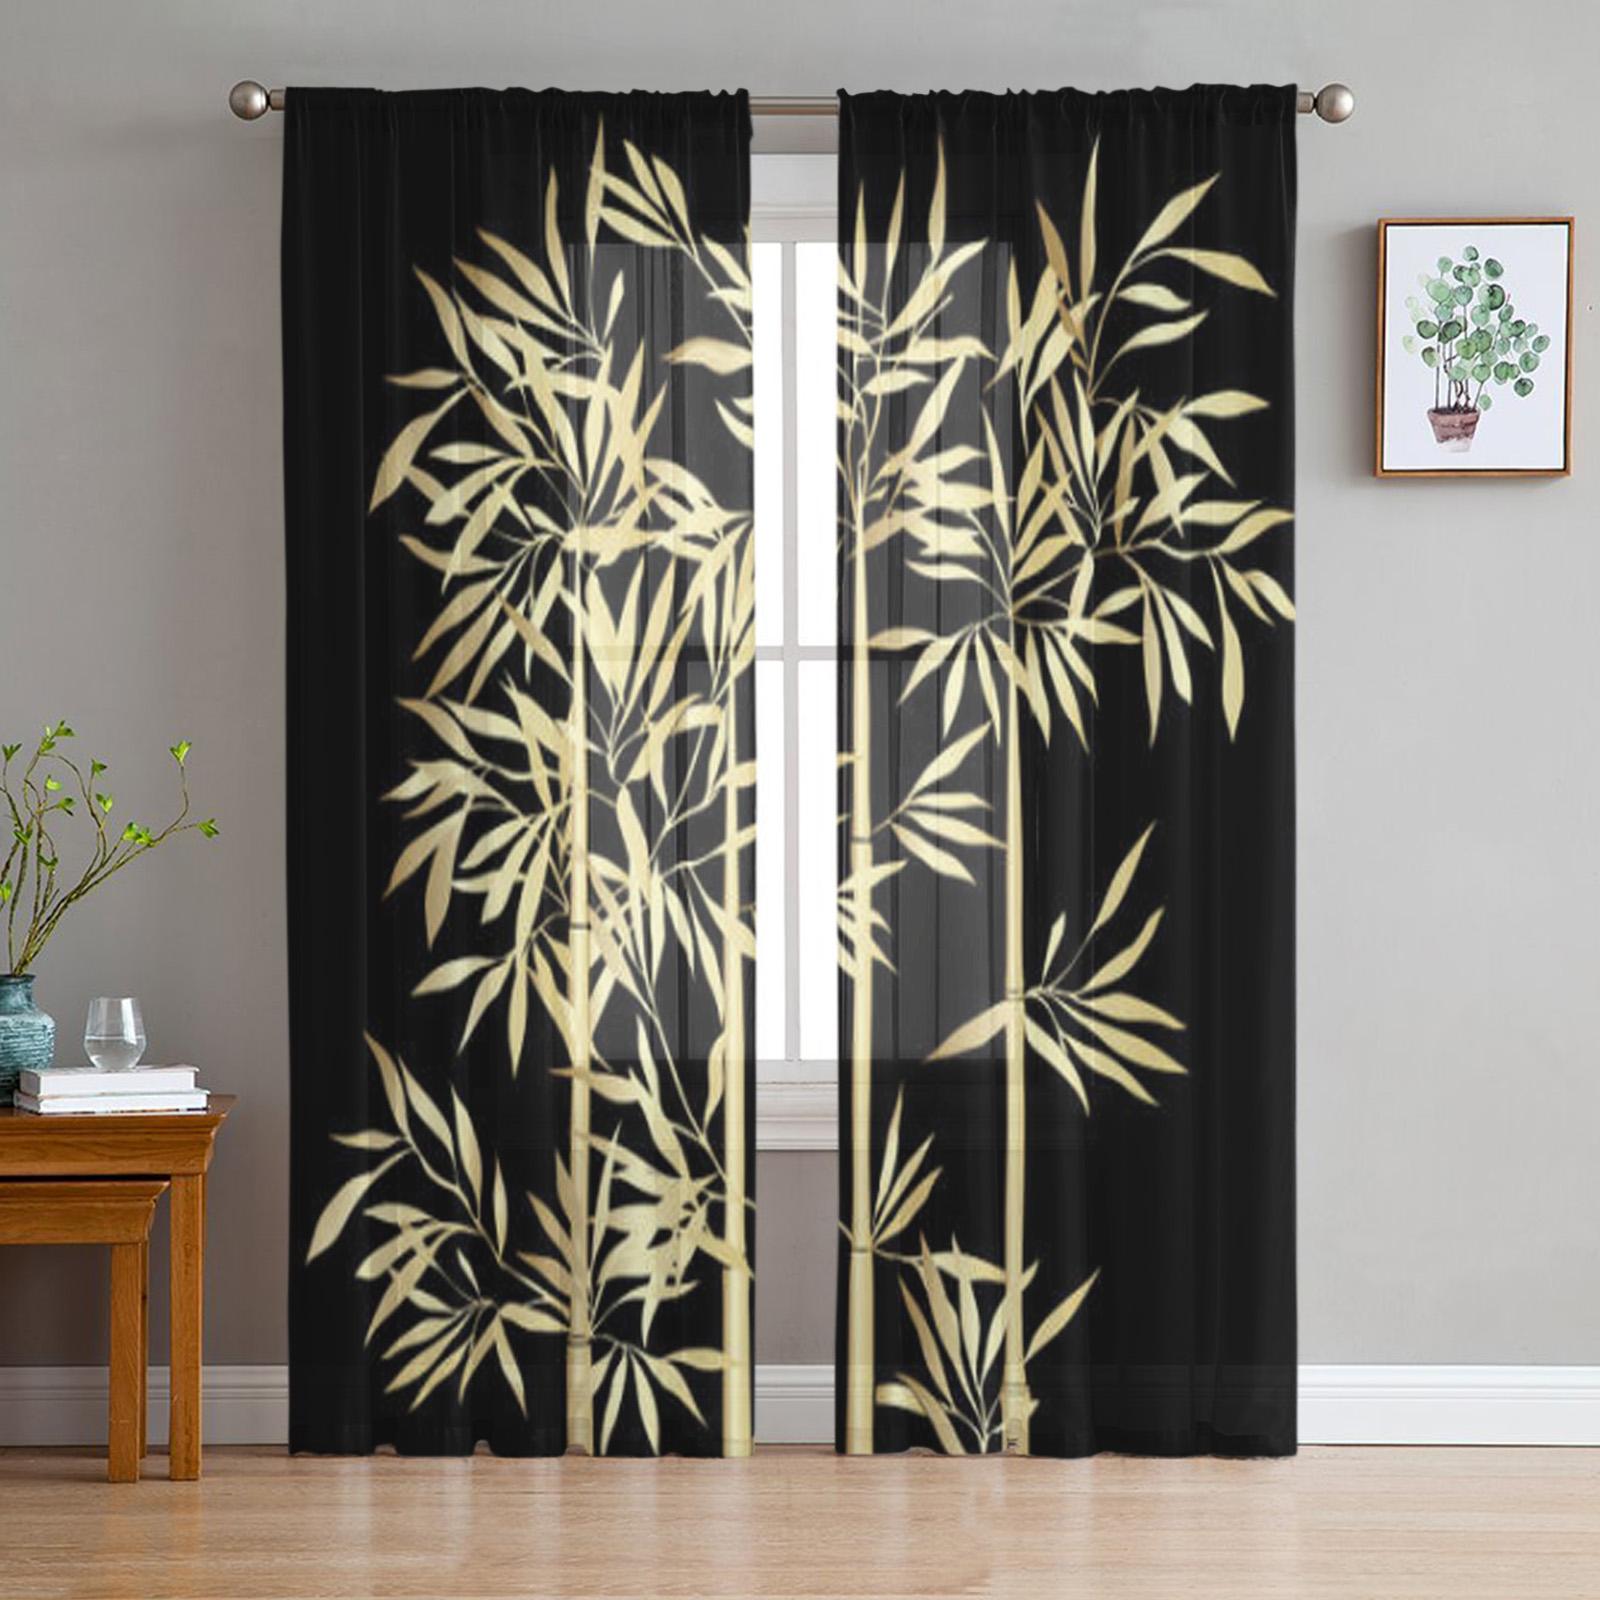 Ting Chung Cortinas transparentes de bambú para sala de estar, cortinas modernas con cenefa para cocina, cortinas de tul